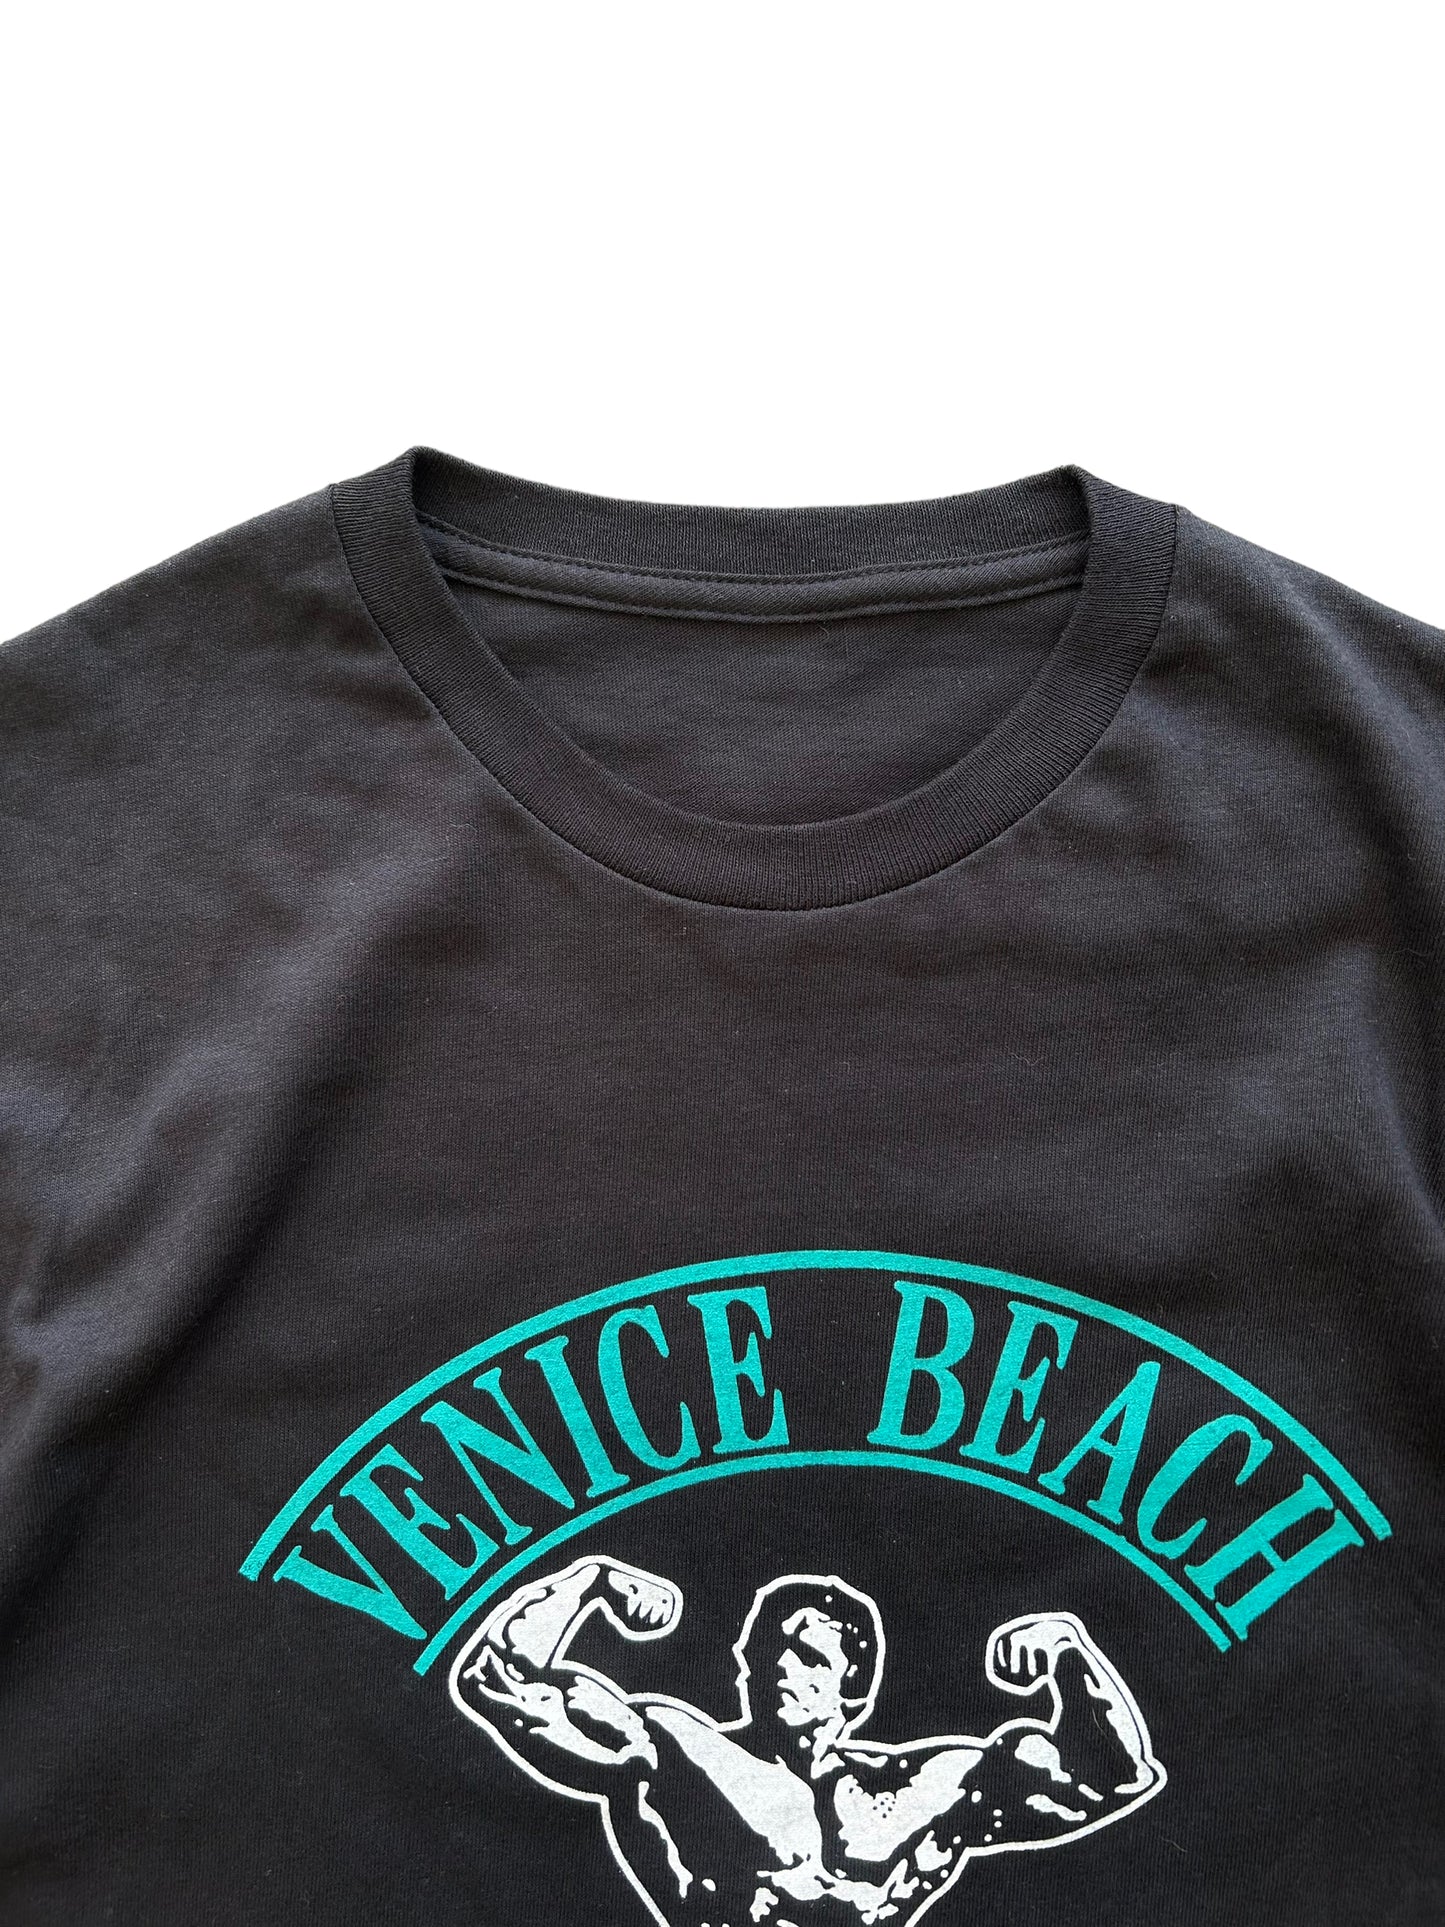 Vintage Venice Beach Tee